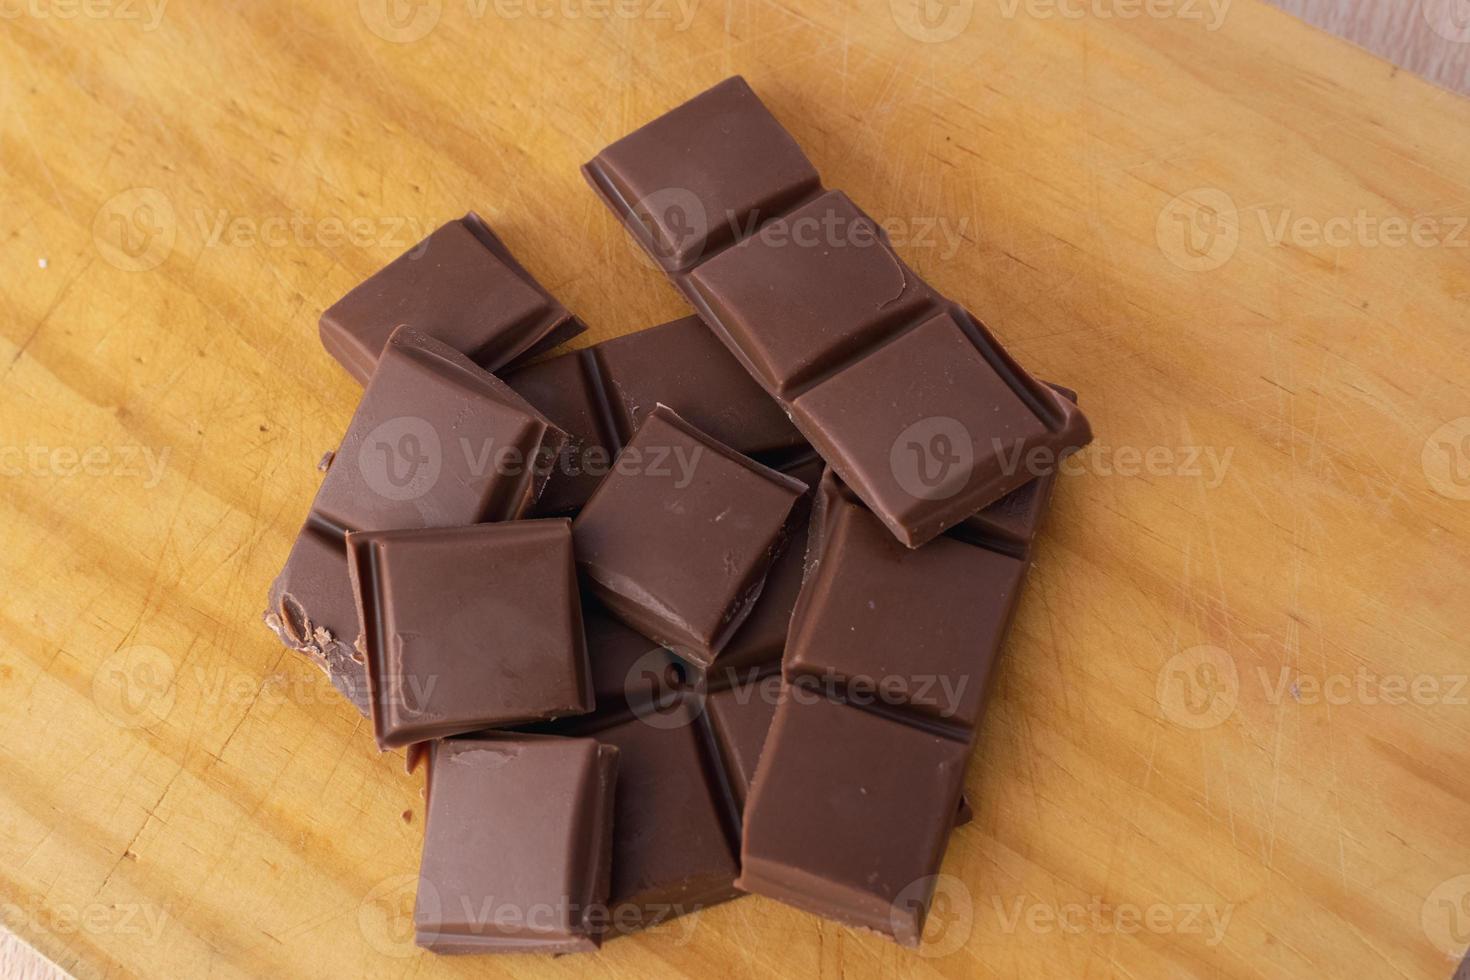 morceaux de chocolat sur une assiette photo